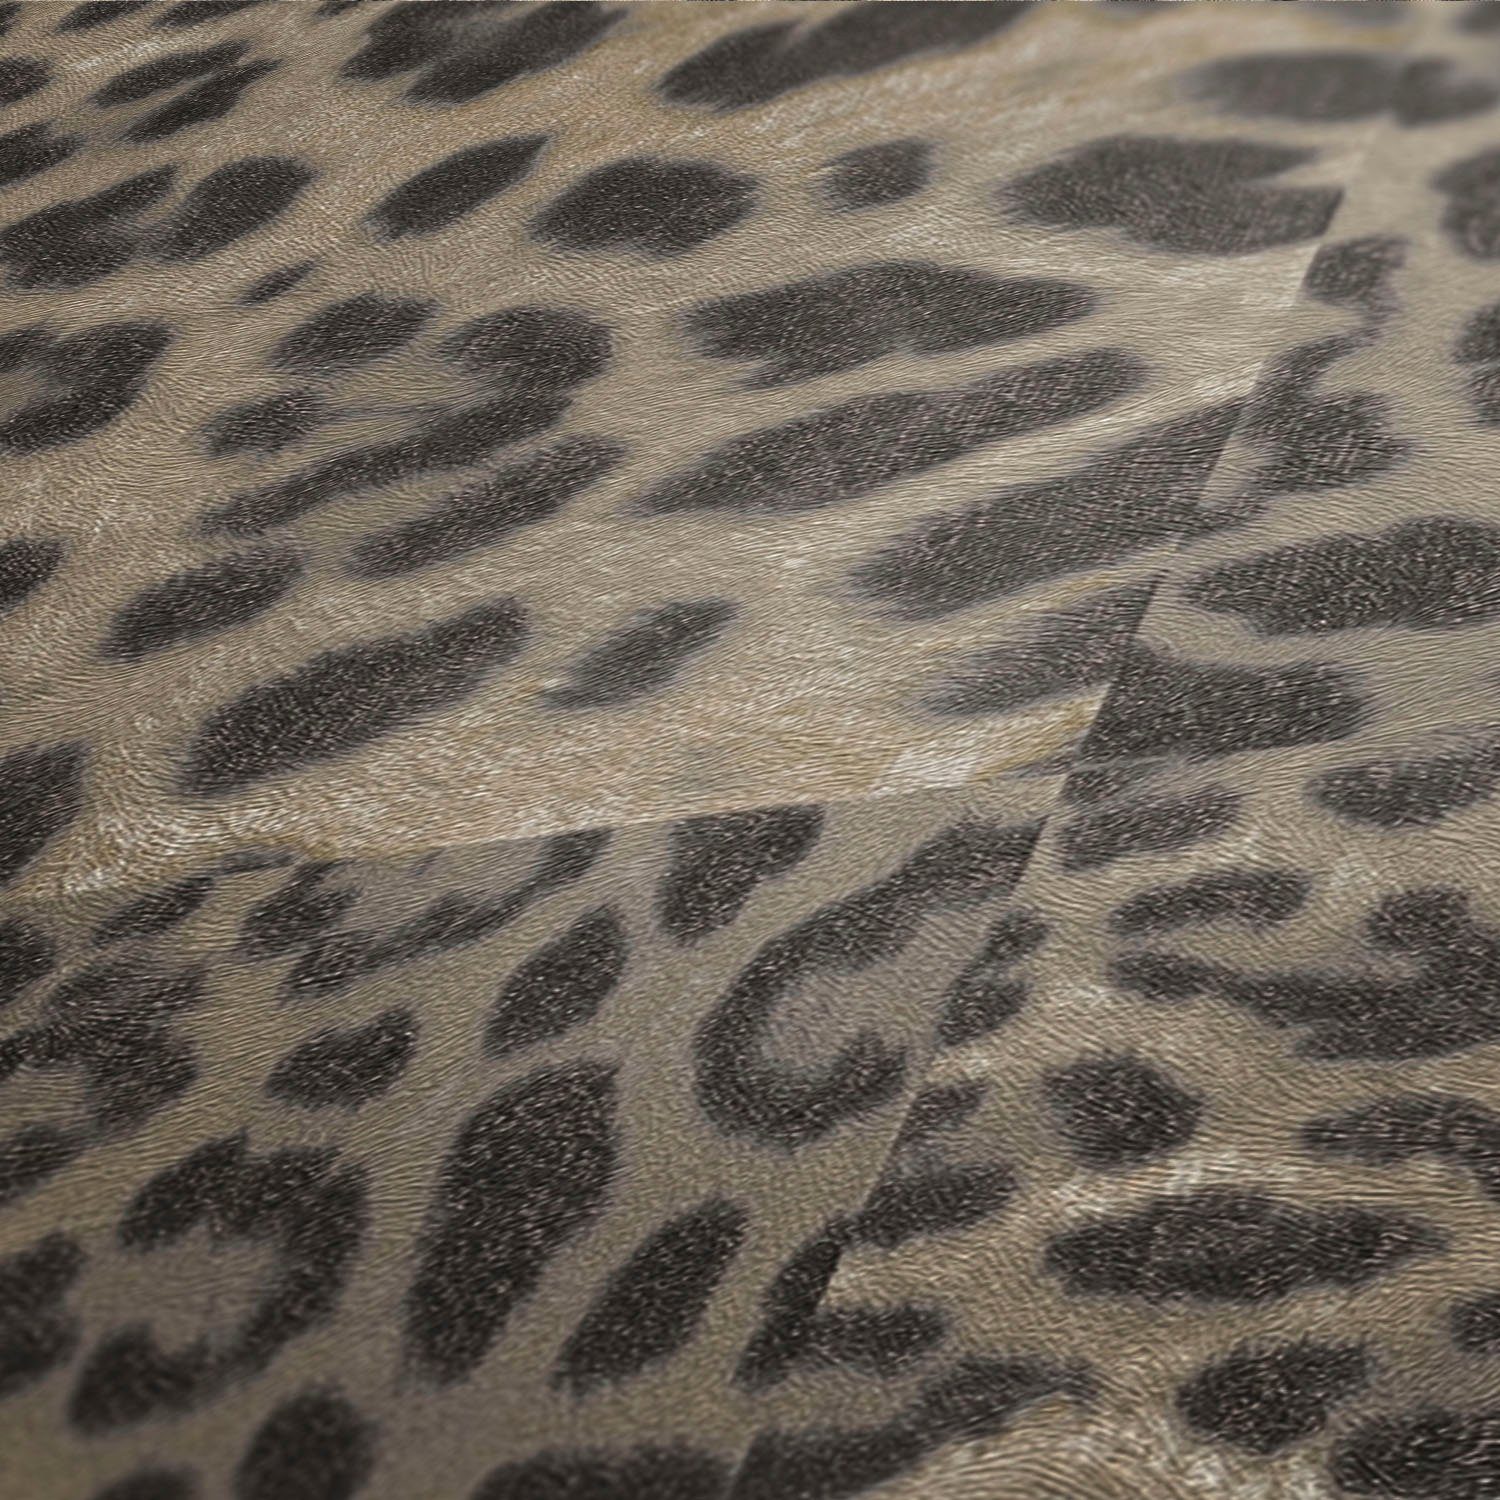 walls Tapete living gemustert, animal Desert Lodge, braun/beige Leopardenmuster print, strukturiert, Fellimitat, Vliestapete